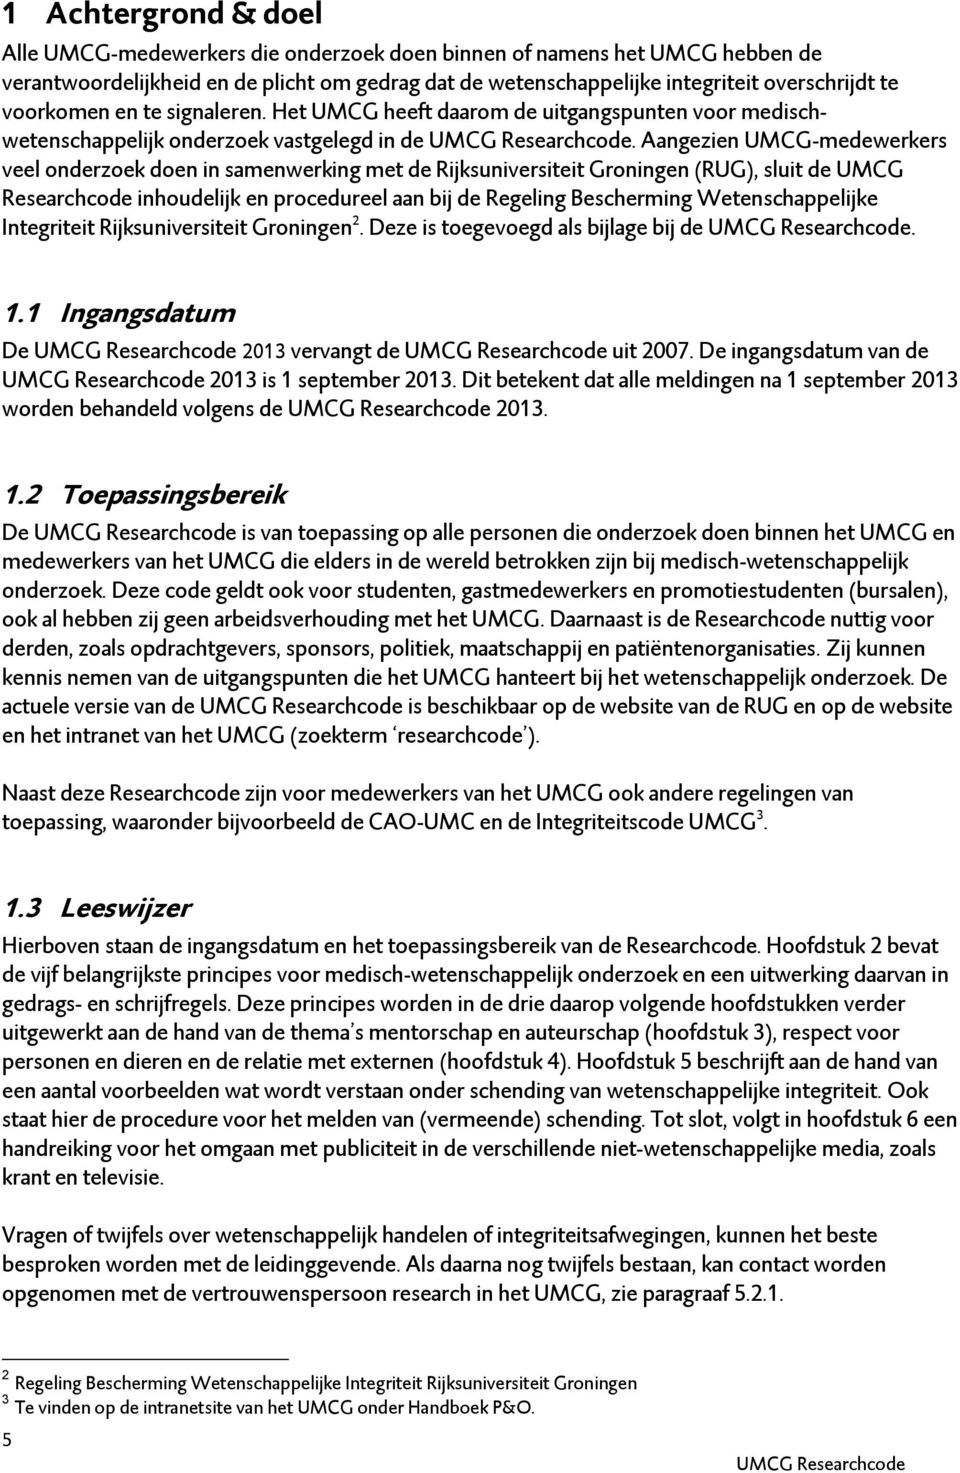 Aangezien UMCG-medewerkers veel onderzoek doen in samenwerking met de Rijksuniversiteit Groningen (RUG), sluit de UMCG Researchcode inhoudelijk en procedureel aan bij de Regeling Bescherming